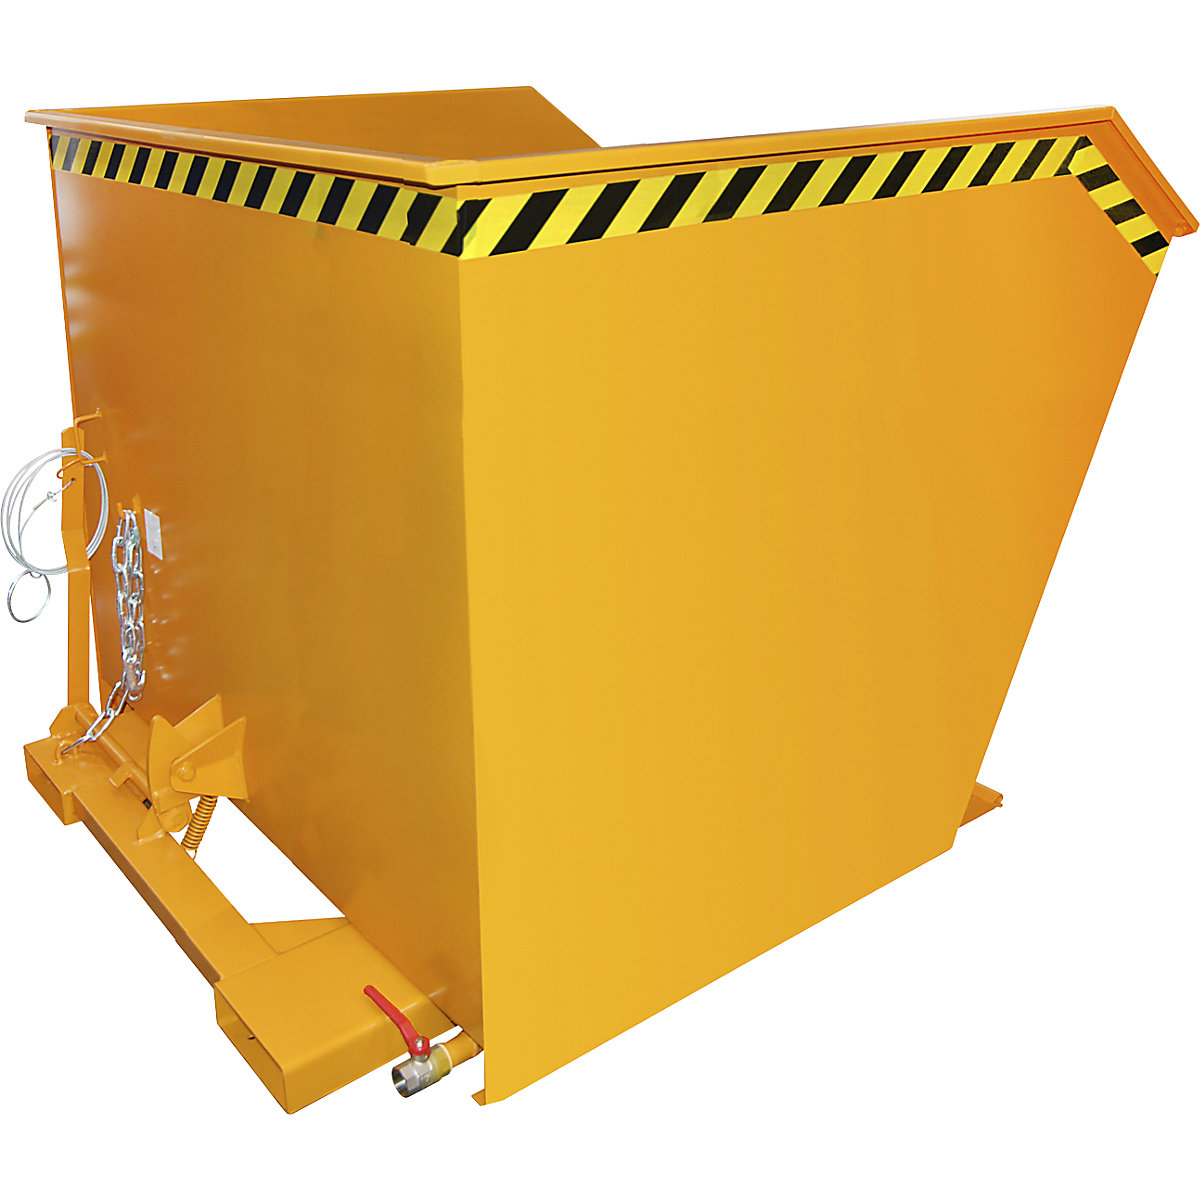 Conteneur pour copeaux GU-E – eurokraft pro, capacité 2 m³, orange jaune-4